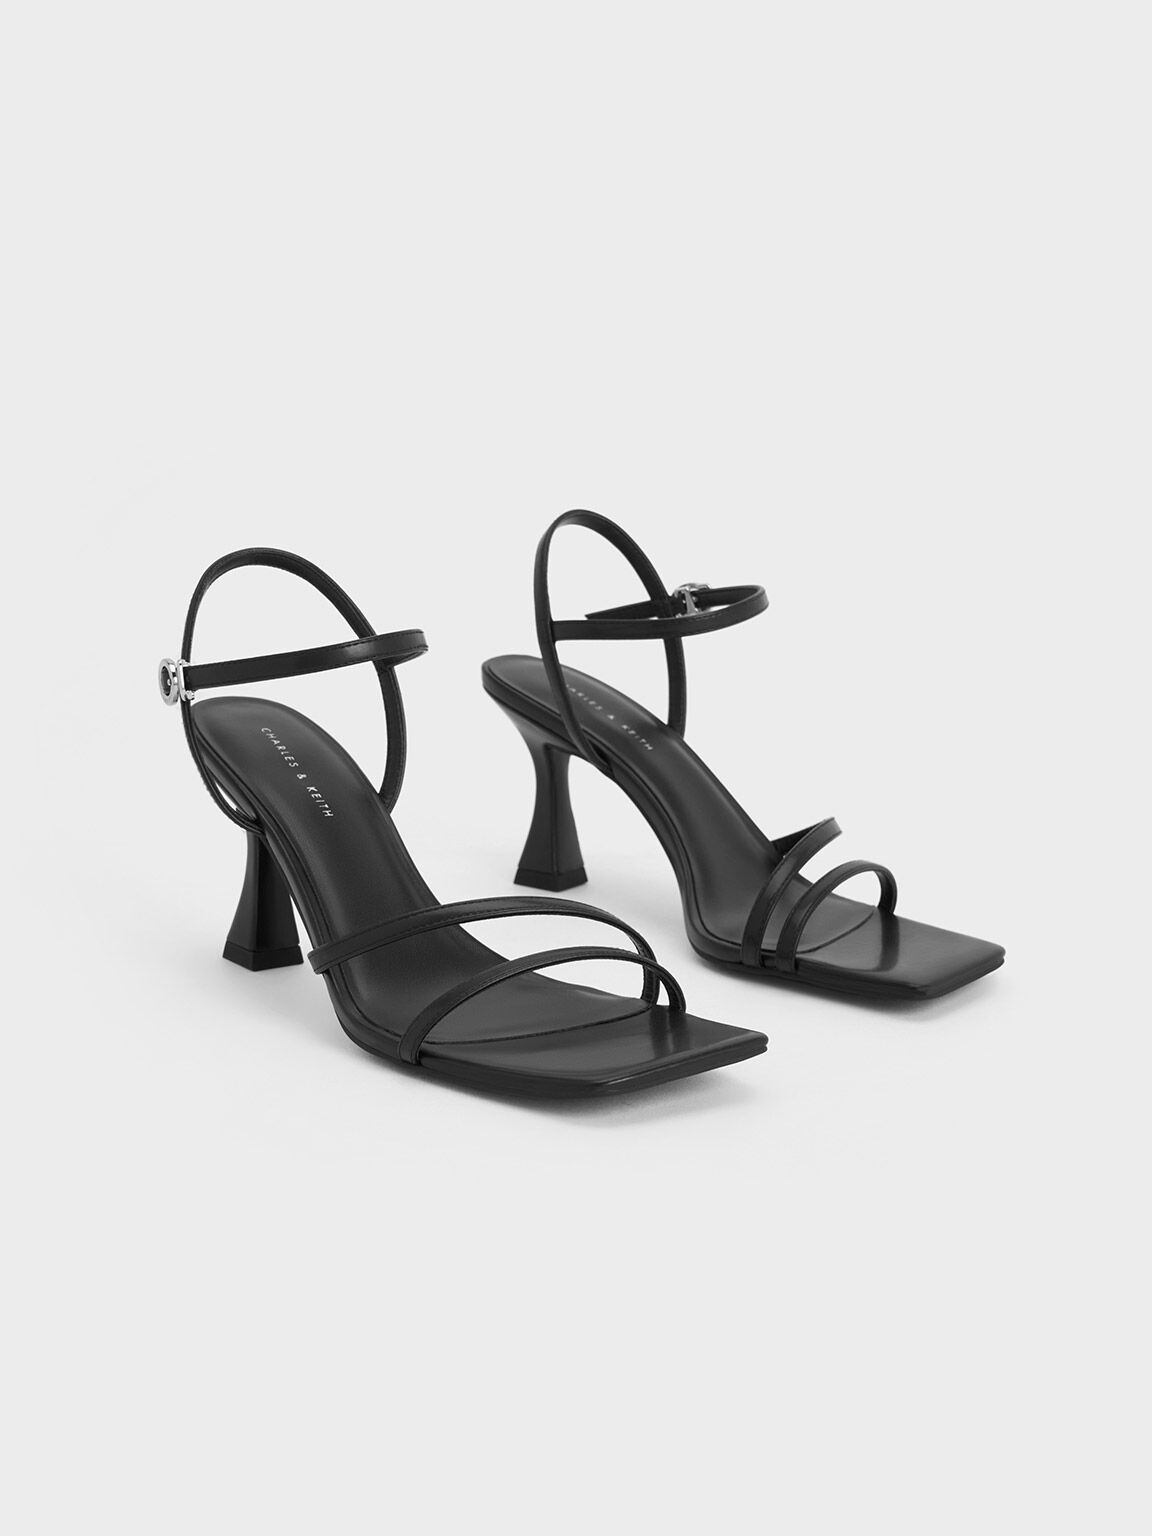 Zara black high heeled sandals 🖤 buckled ankle strap... - Depop